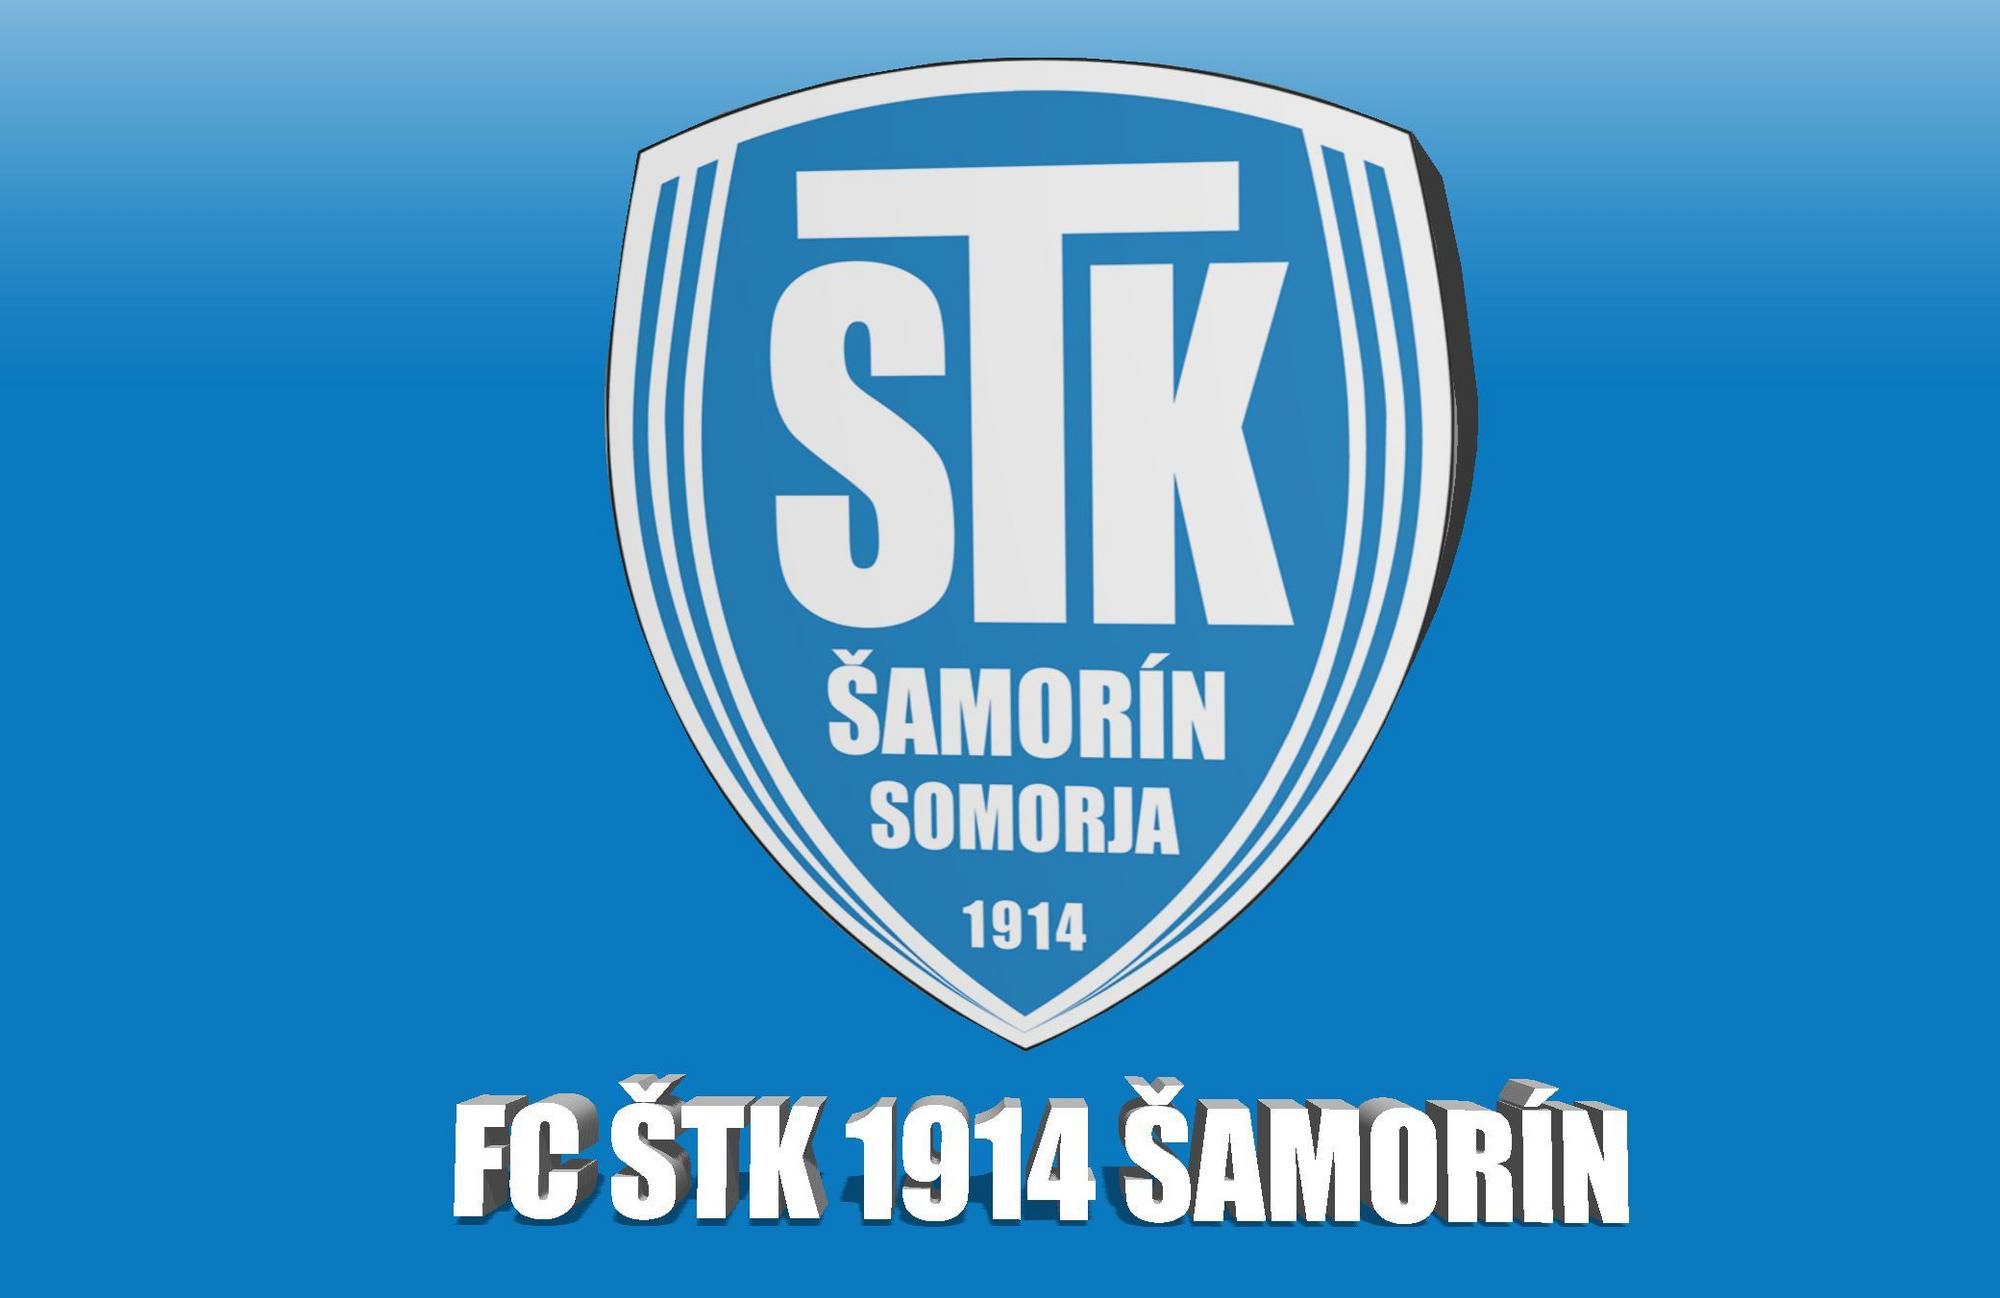 Návrat k tradičnému názvu FC ŠTK 1914 Šamorín, ale s upraveným logom